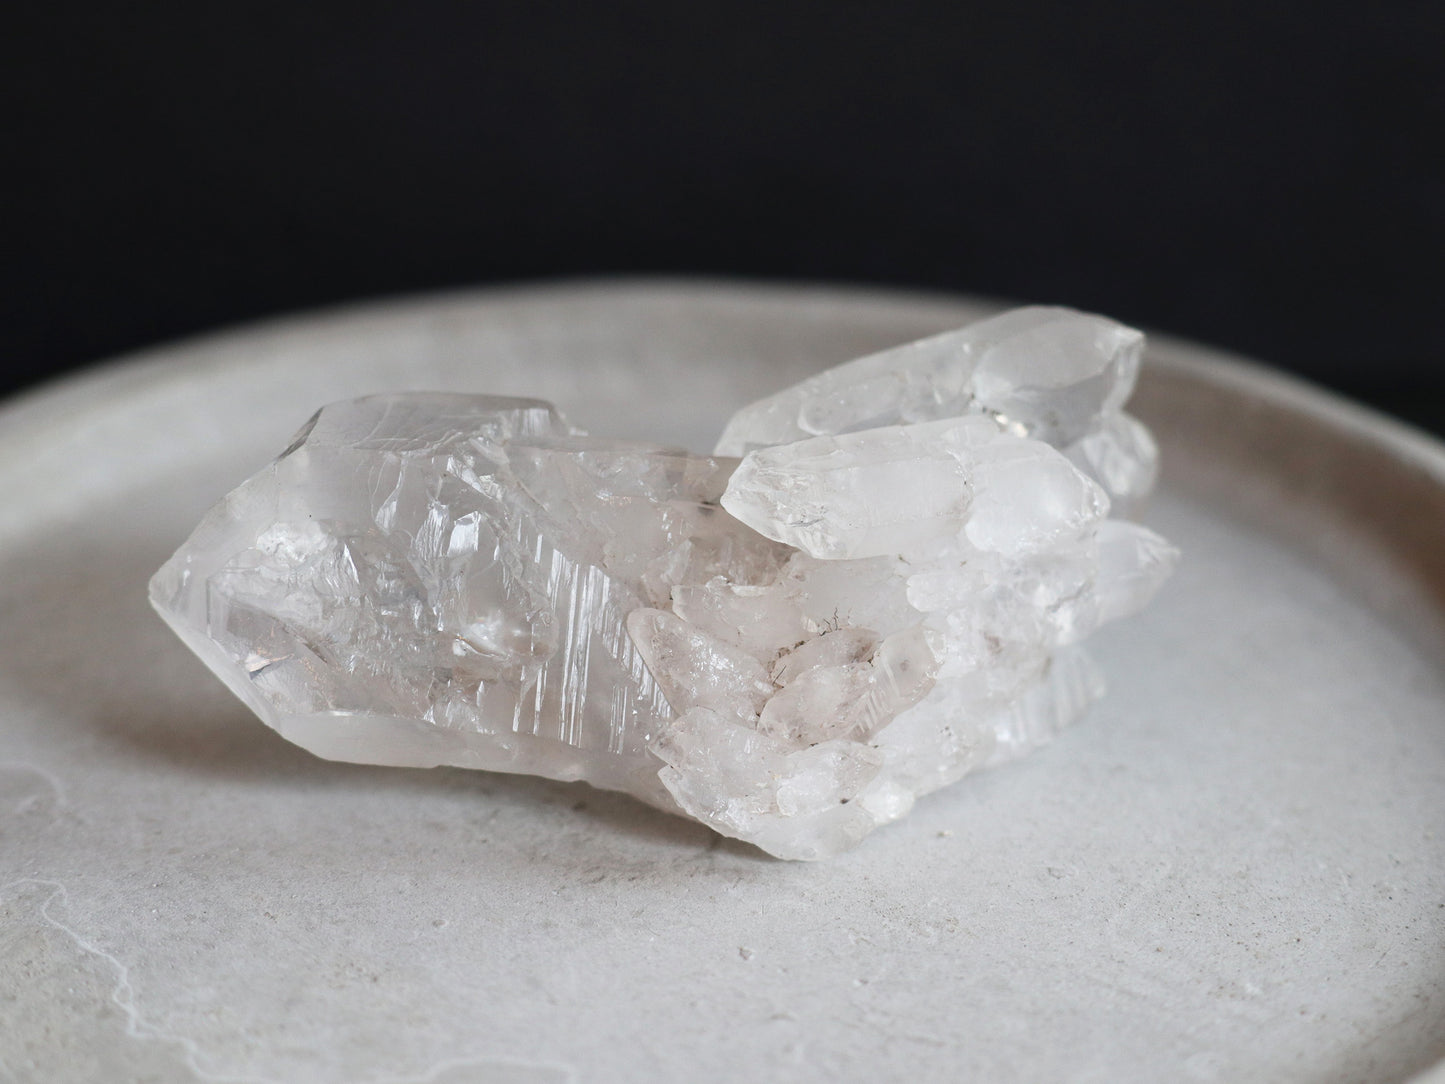 エレスチャル、レインボー、ダブルポイント、ガネーシュヒマール産ヒマラヤ水晶原石PN:GG-127